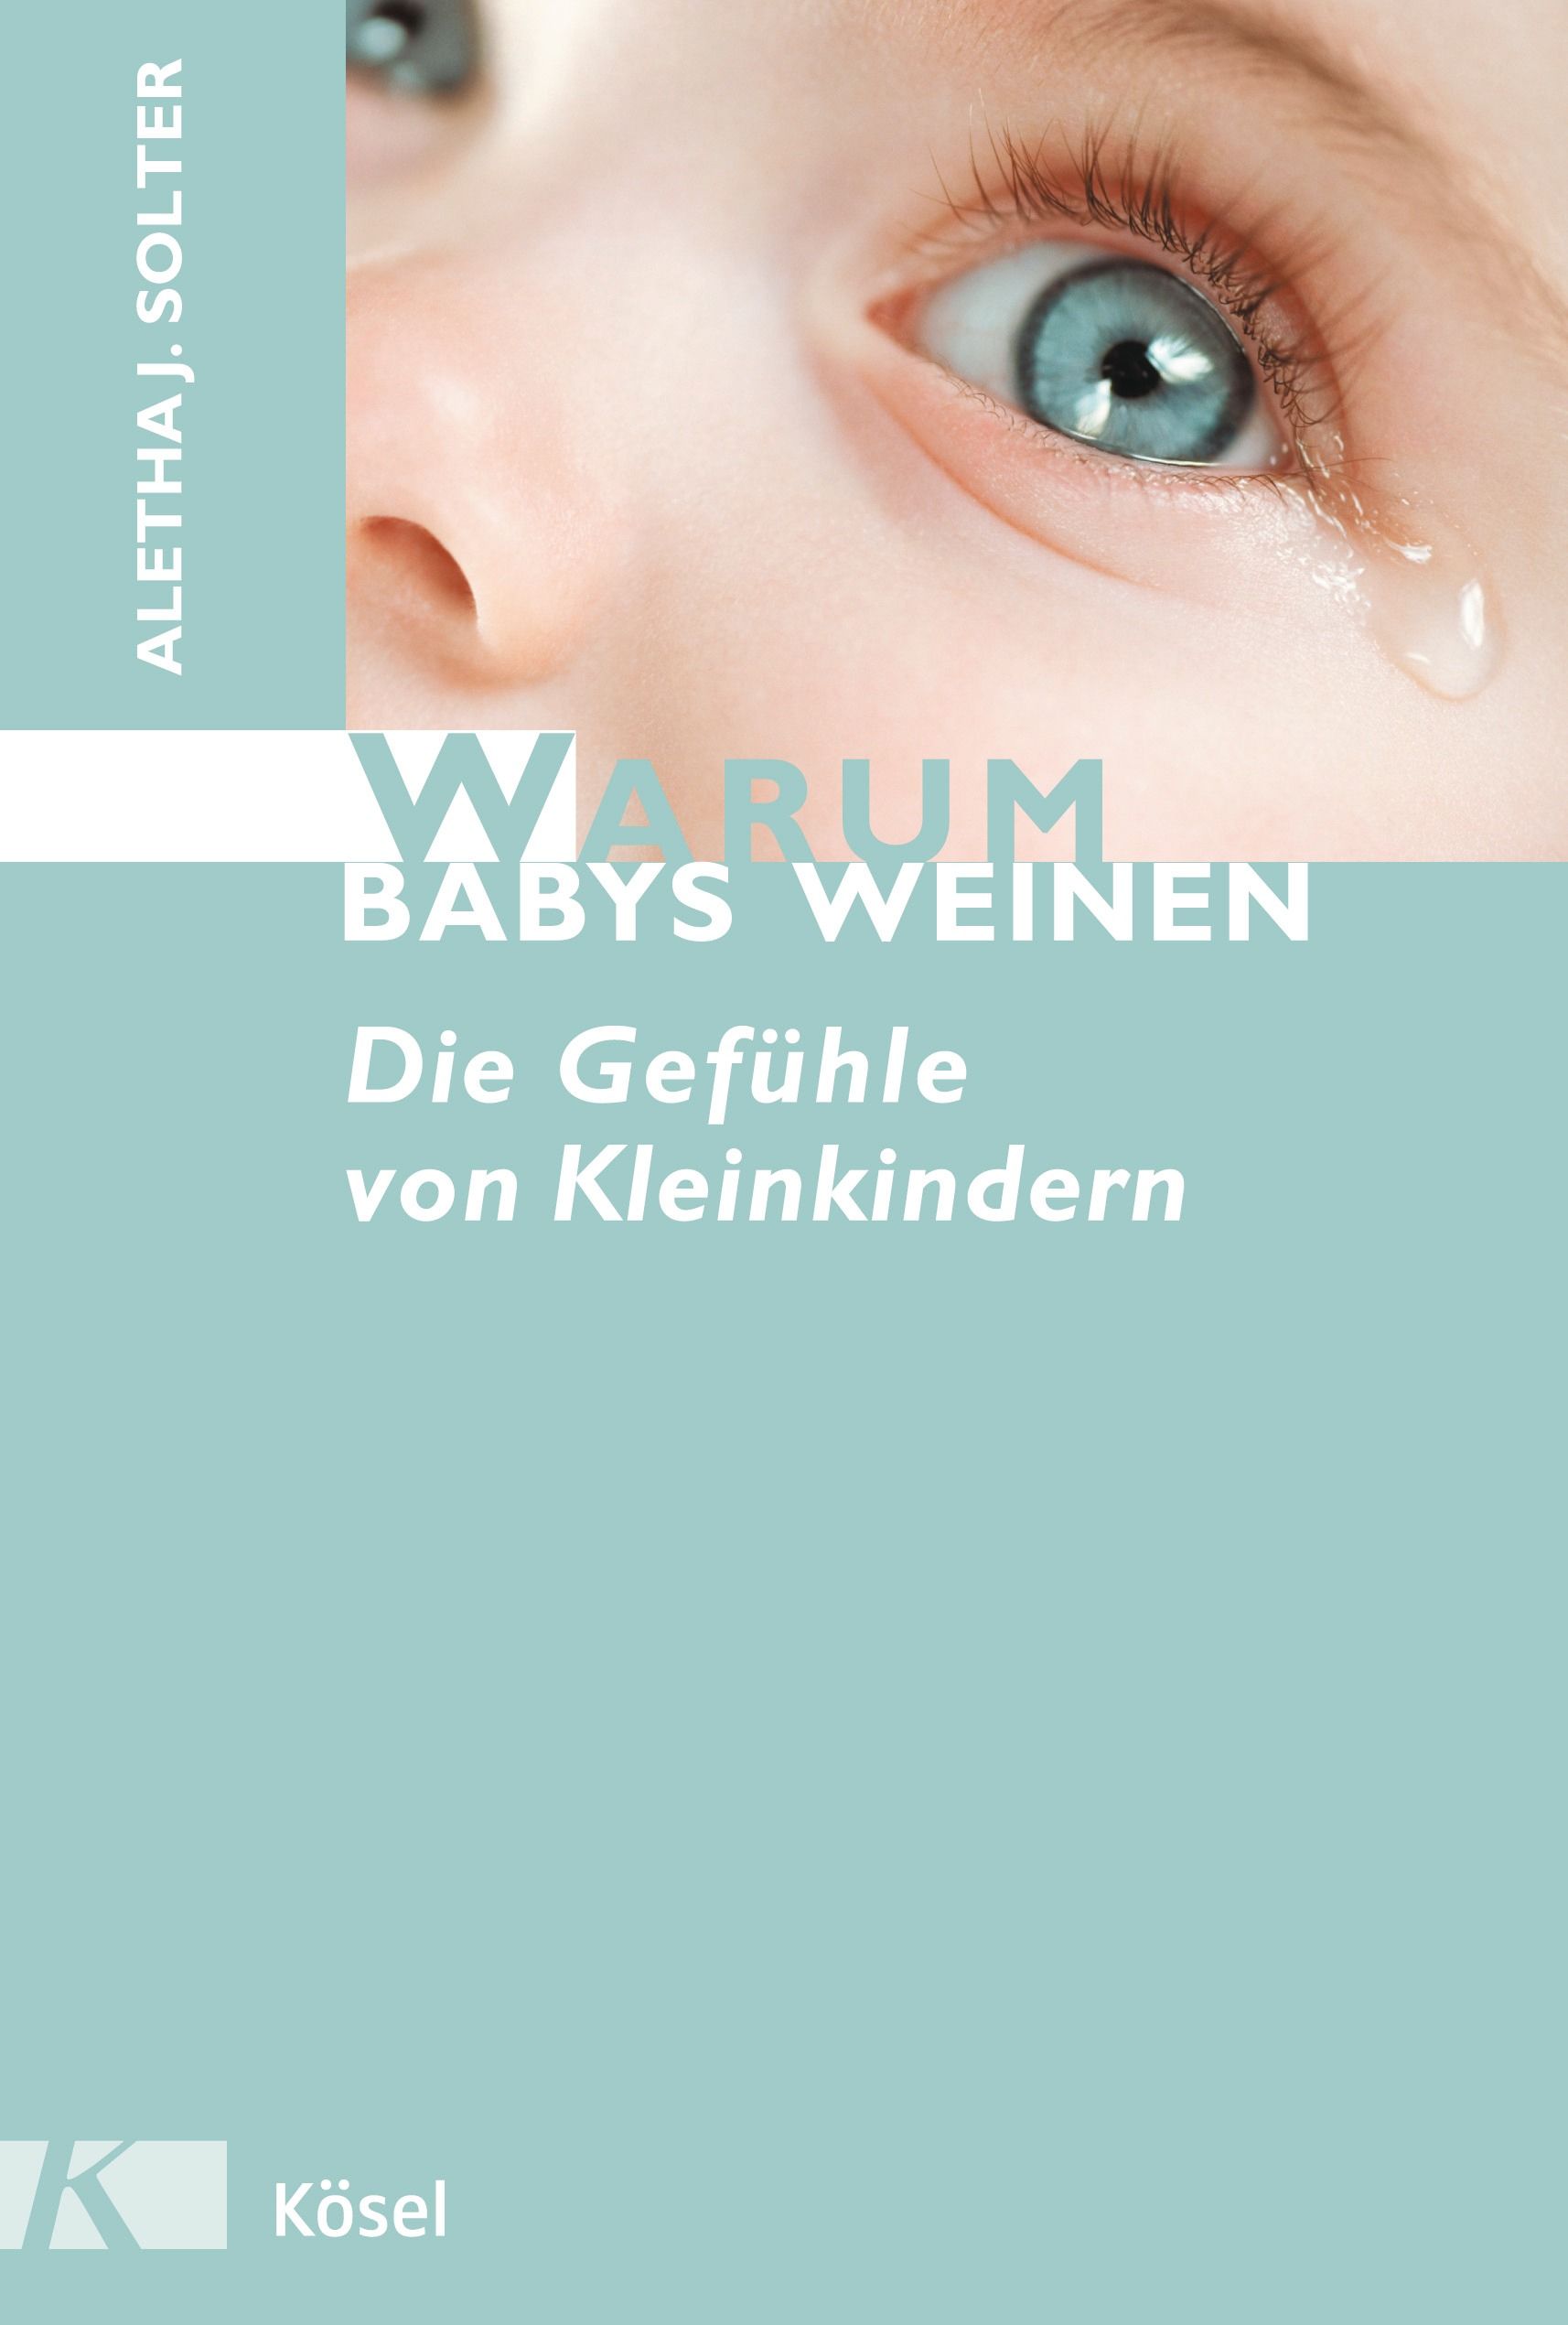 Warum Babys weinen